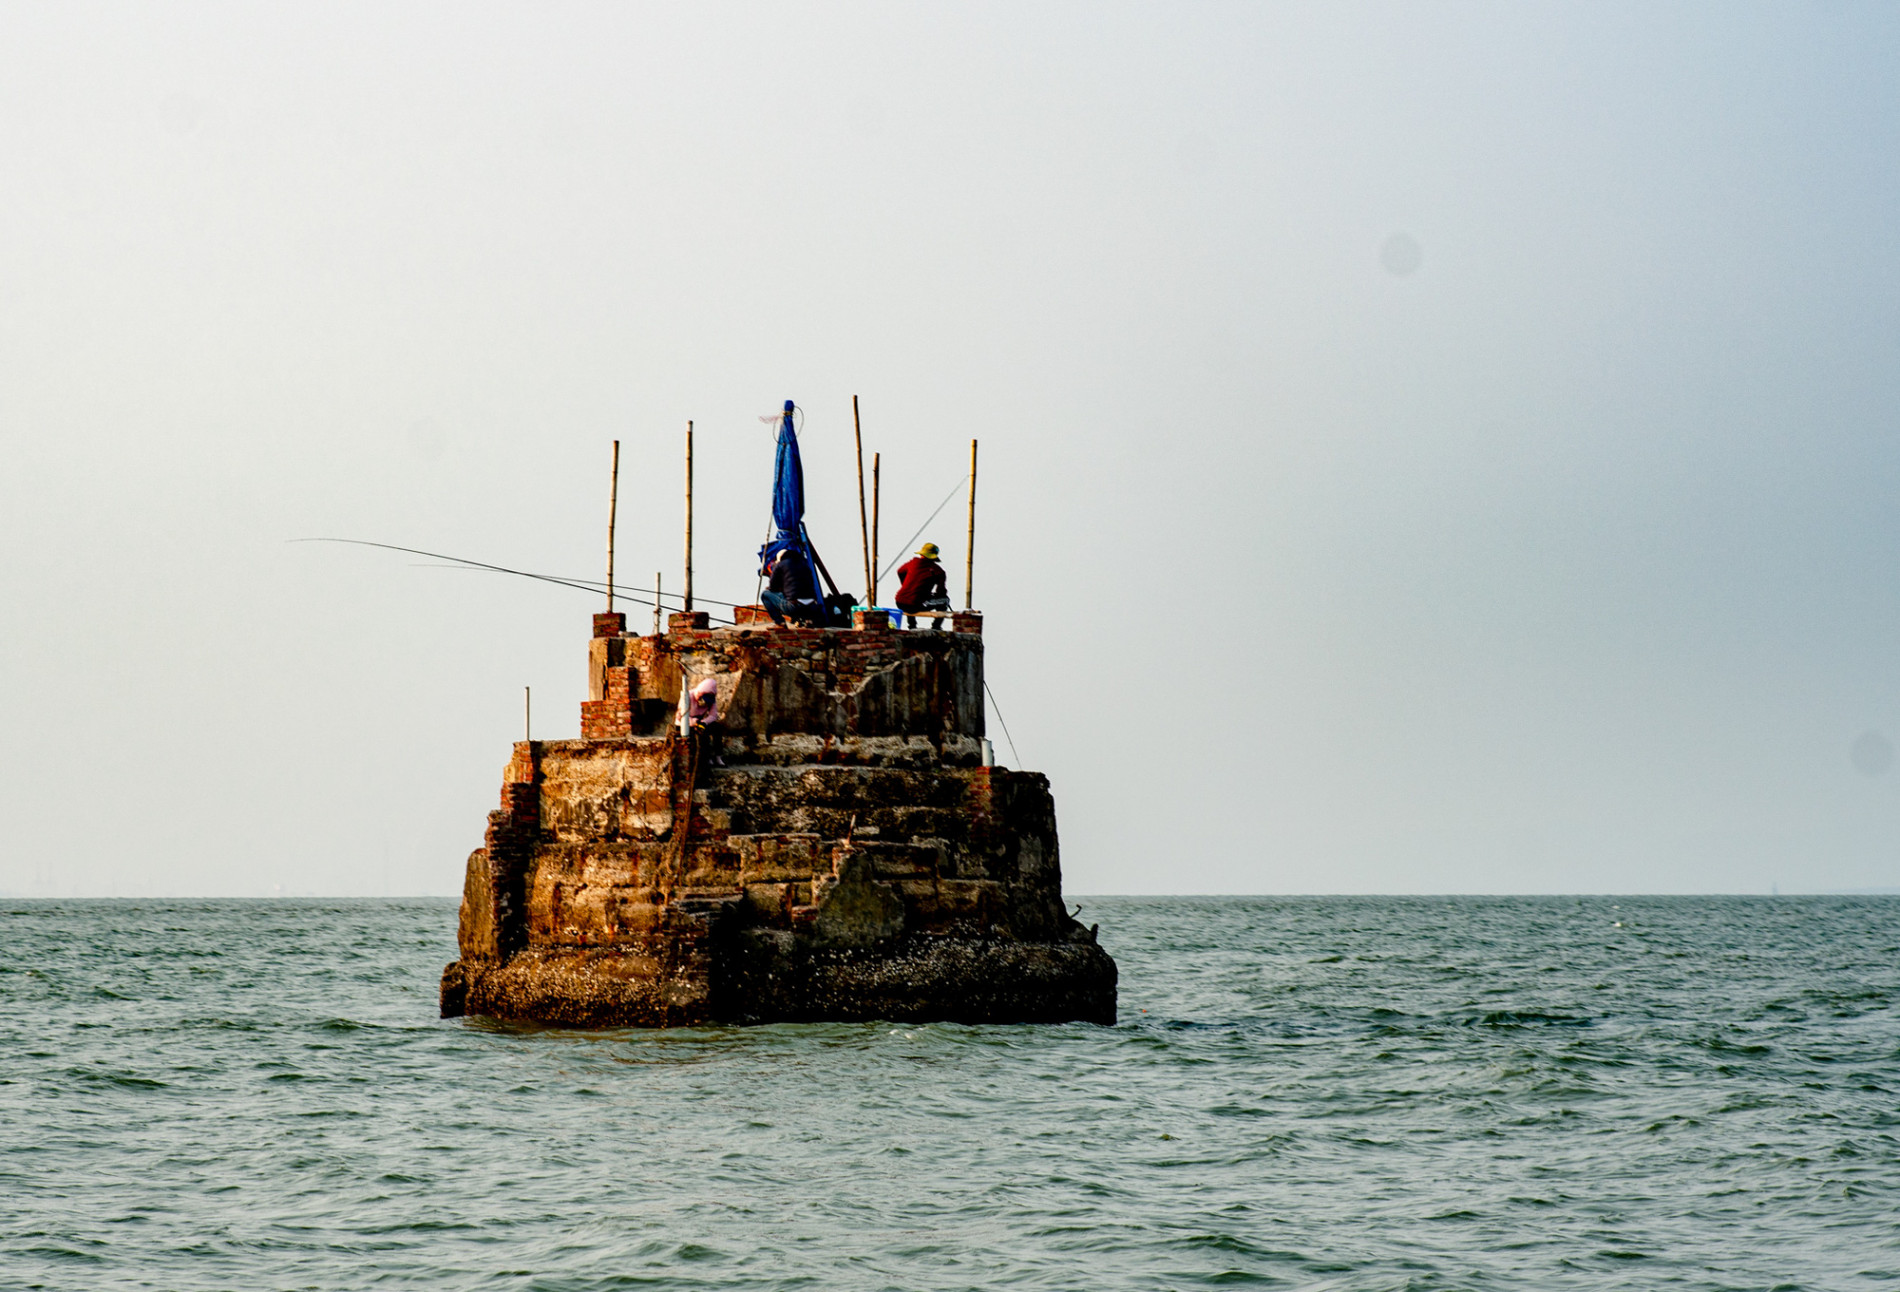 Khám phá đảo bé hạt tiêu có hải đăng cổ nhất Việt Nam, 124 năm vững vàng trước sóng gió - Ảnh 13.